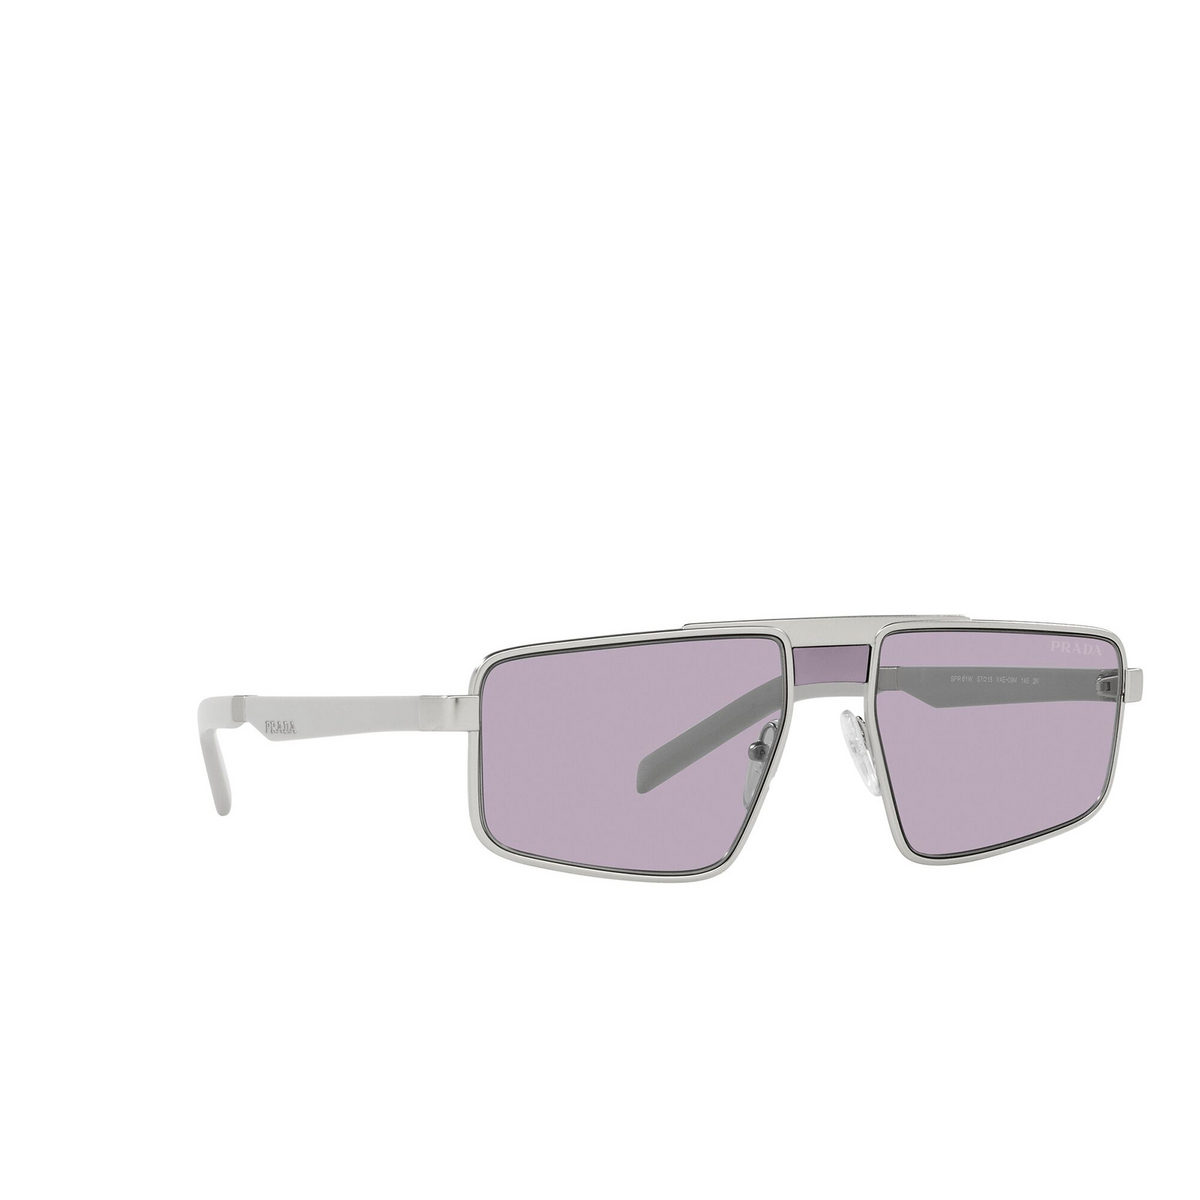 Prada® Irregular Sunglasses: PR 61WS color Matte Silver VAE09M - three-quarters view.